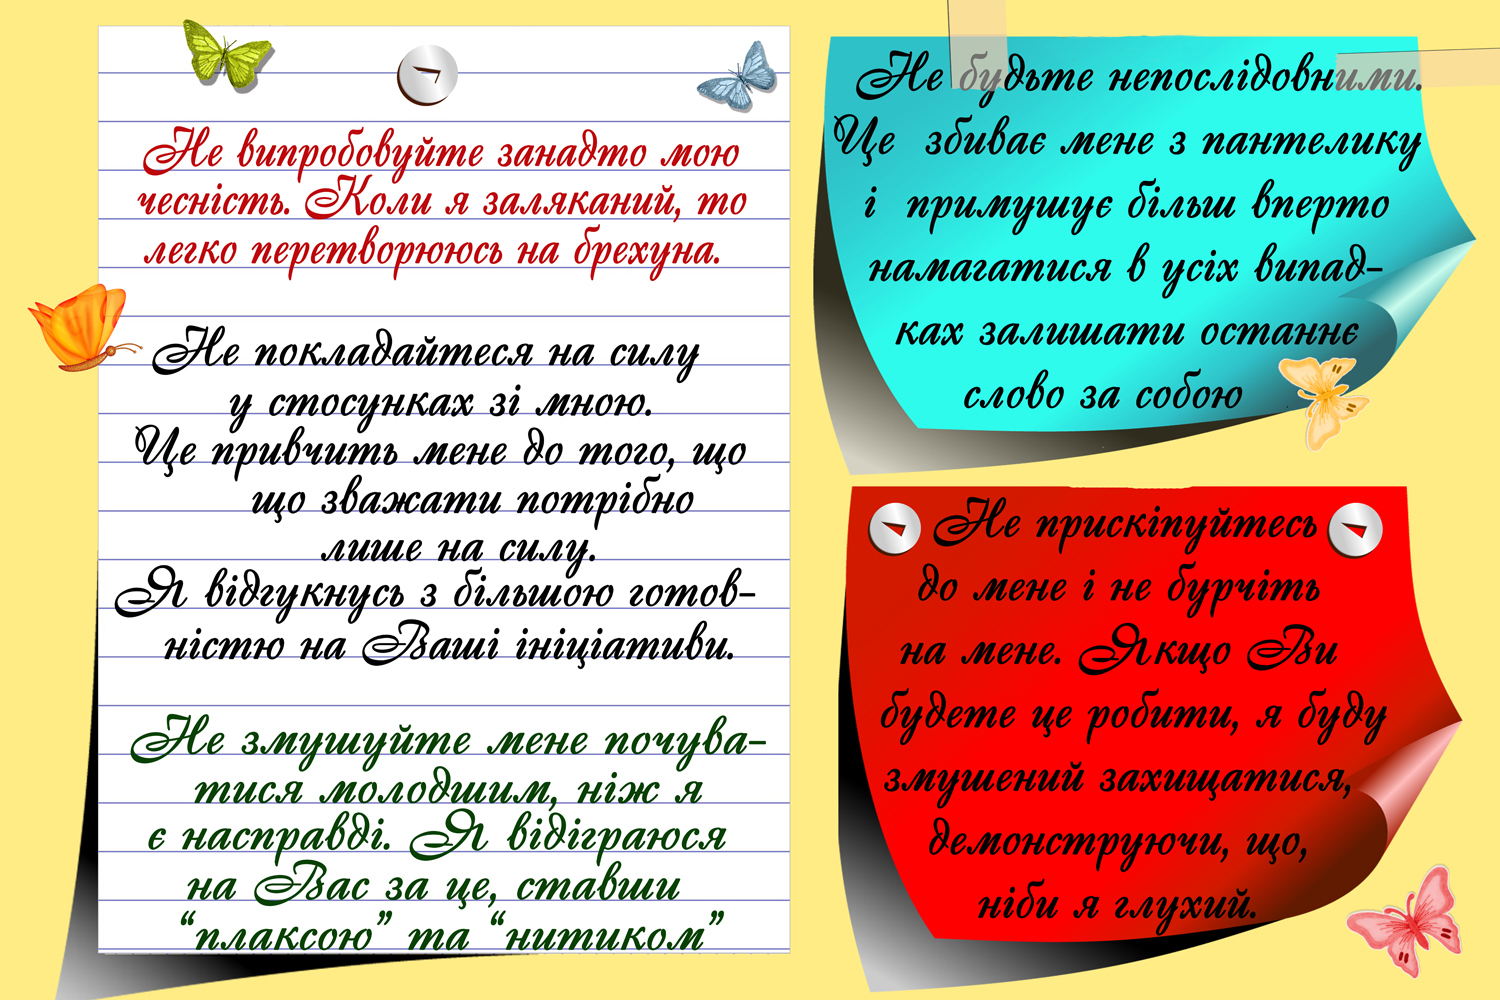 http://nvk-olenivka.klasna.com/uploads/editor/1/570097/sitepage_39/images/3.bmp